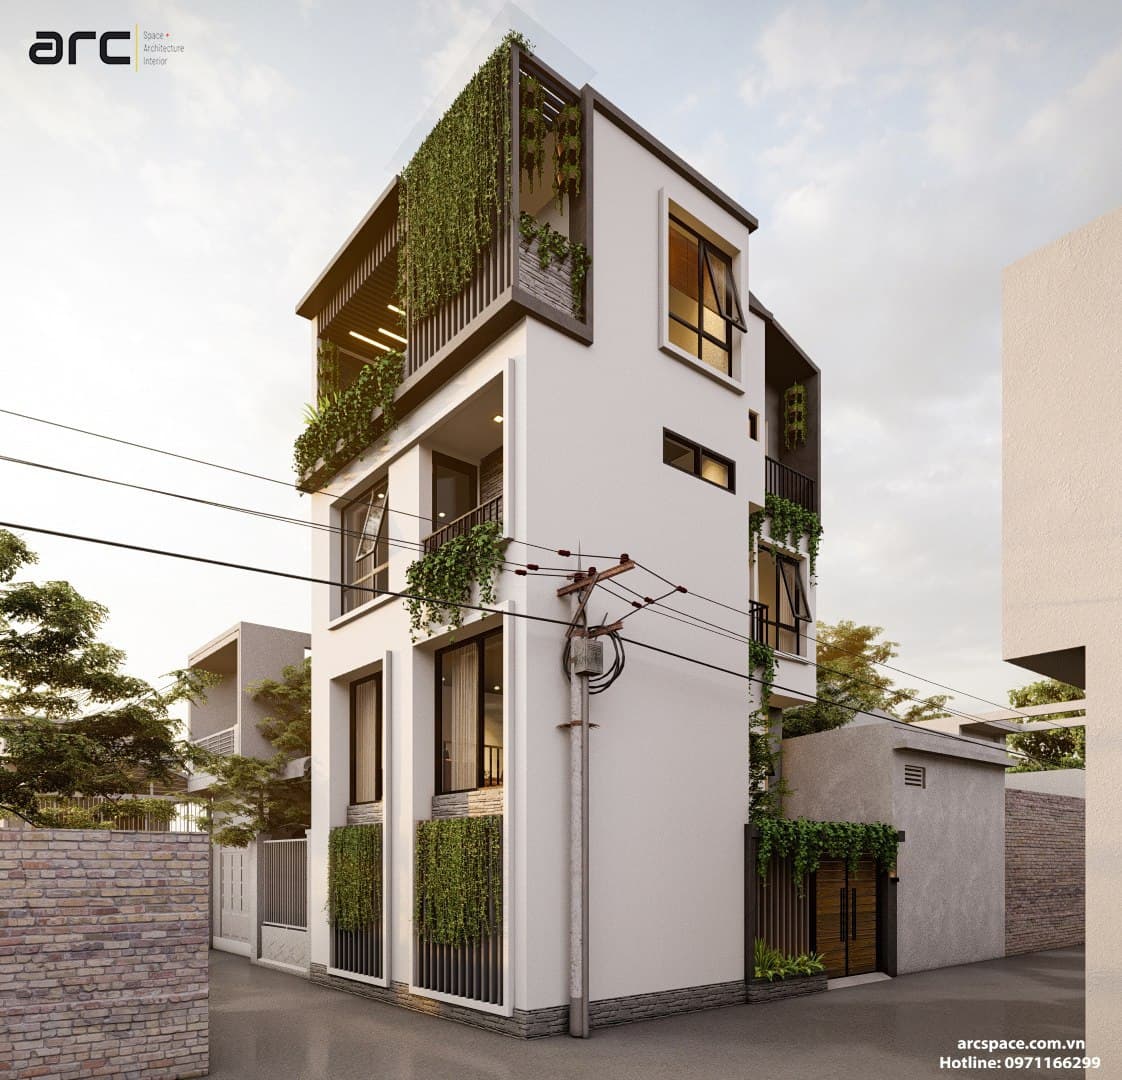 Mẫu nhà phố đẹp tại Thường Tín - Thiết kế kiến trúc Arc Space